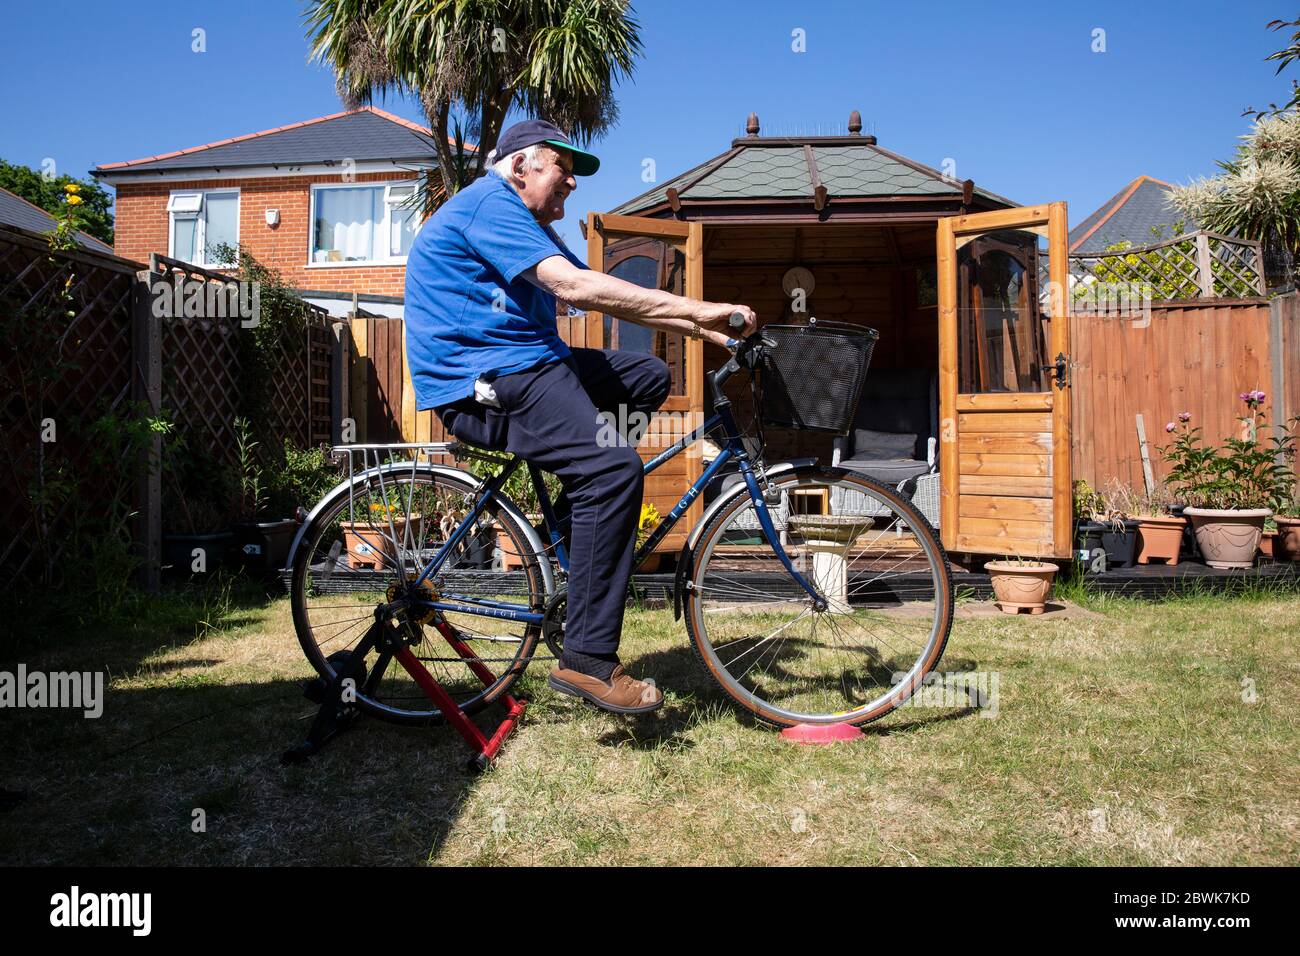 L'uomo anziano nei suoi anni 80 che tiene la forma su un addestratore della bicicletta si trova nel loro giardino posteriore durante il lockdown del coronavirus, Inghilterra sudoccidentale, Regno Unito Foto Stock